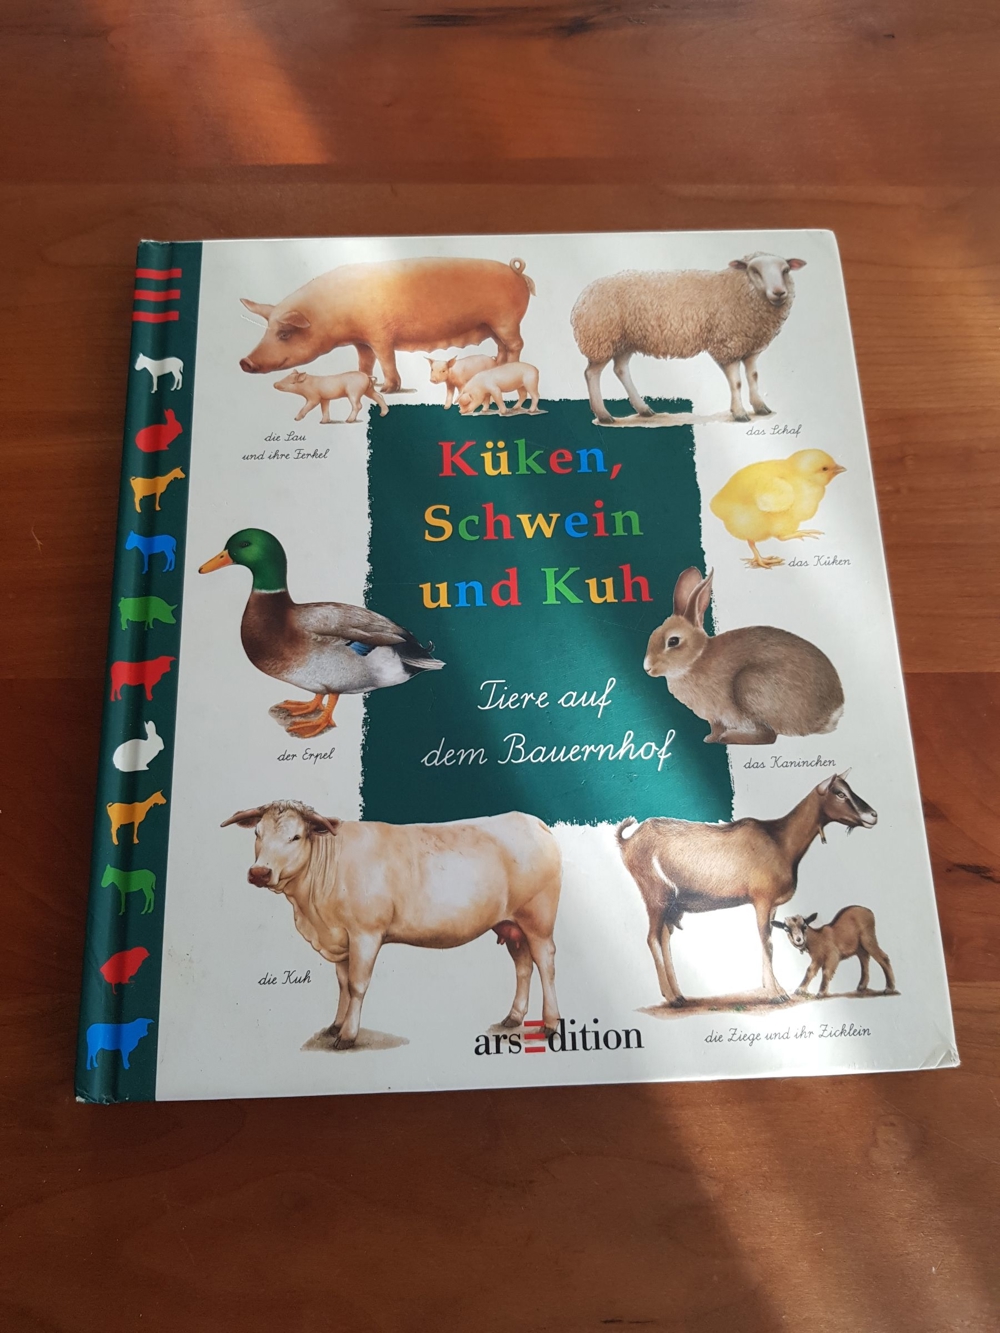 Kindersachbuch "Küken, Schwein und Kuh" - Tiere auf dem Bauenhof